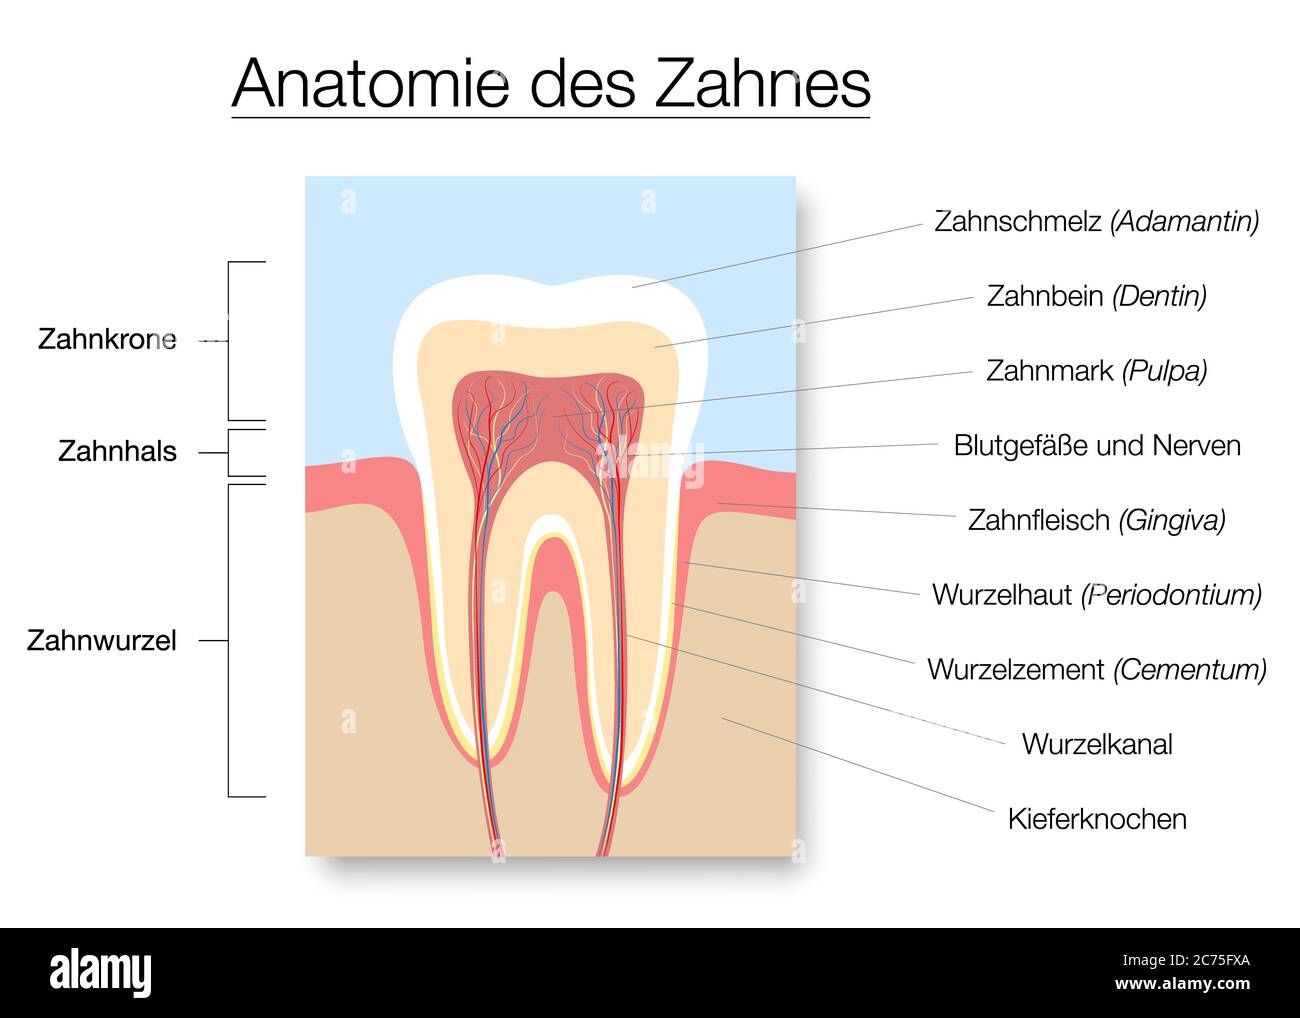 Anatomie des dents, noms allemands, tableau de section médicale avec émail, dentine, pulpe, gingiva, vaisseaux sanguins et nerfs. Banque D'Images